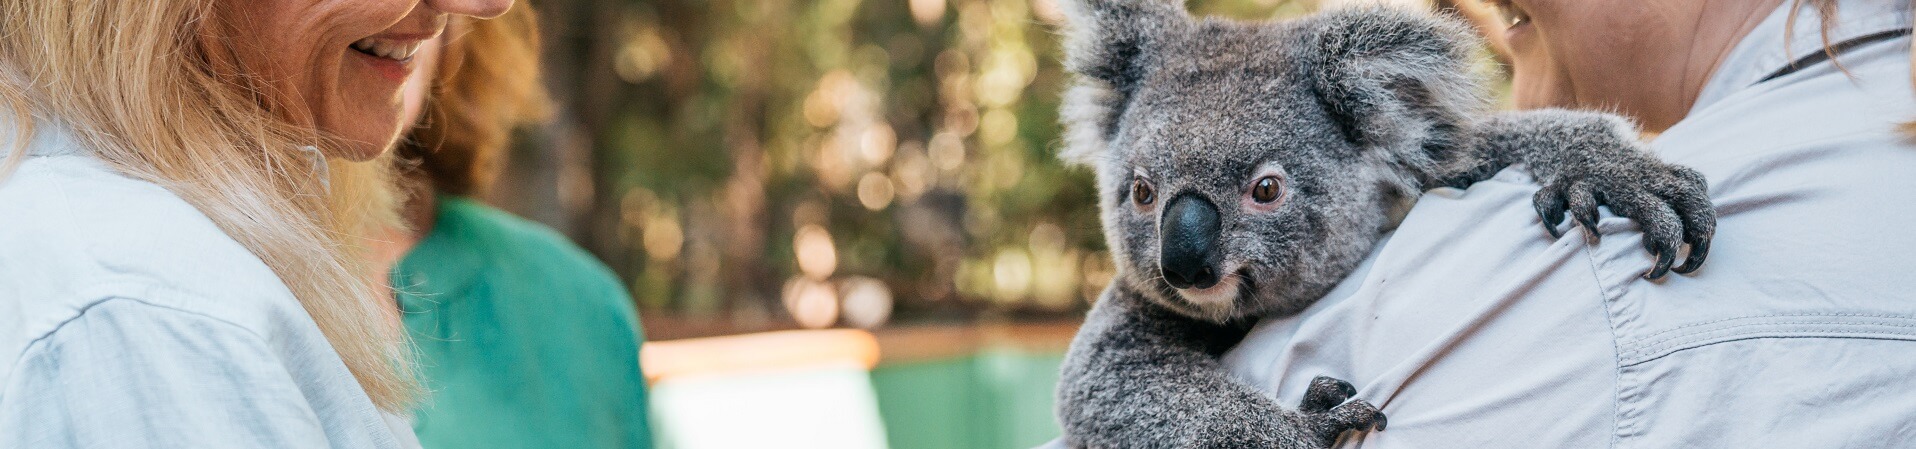 Can you hold koalas at Currumbin Wildlife Sanctuary?